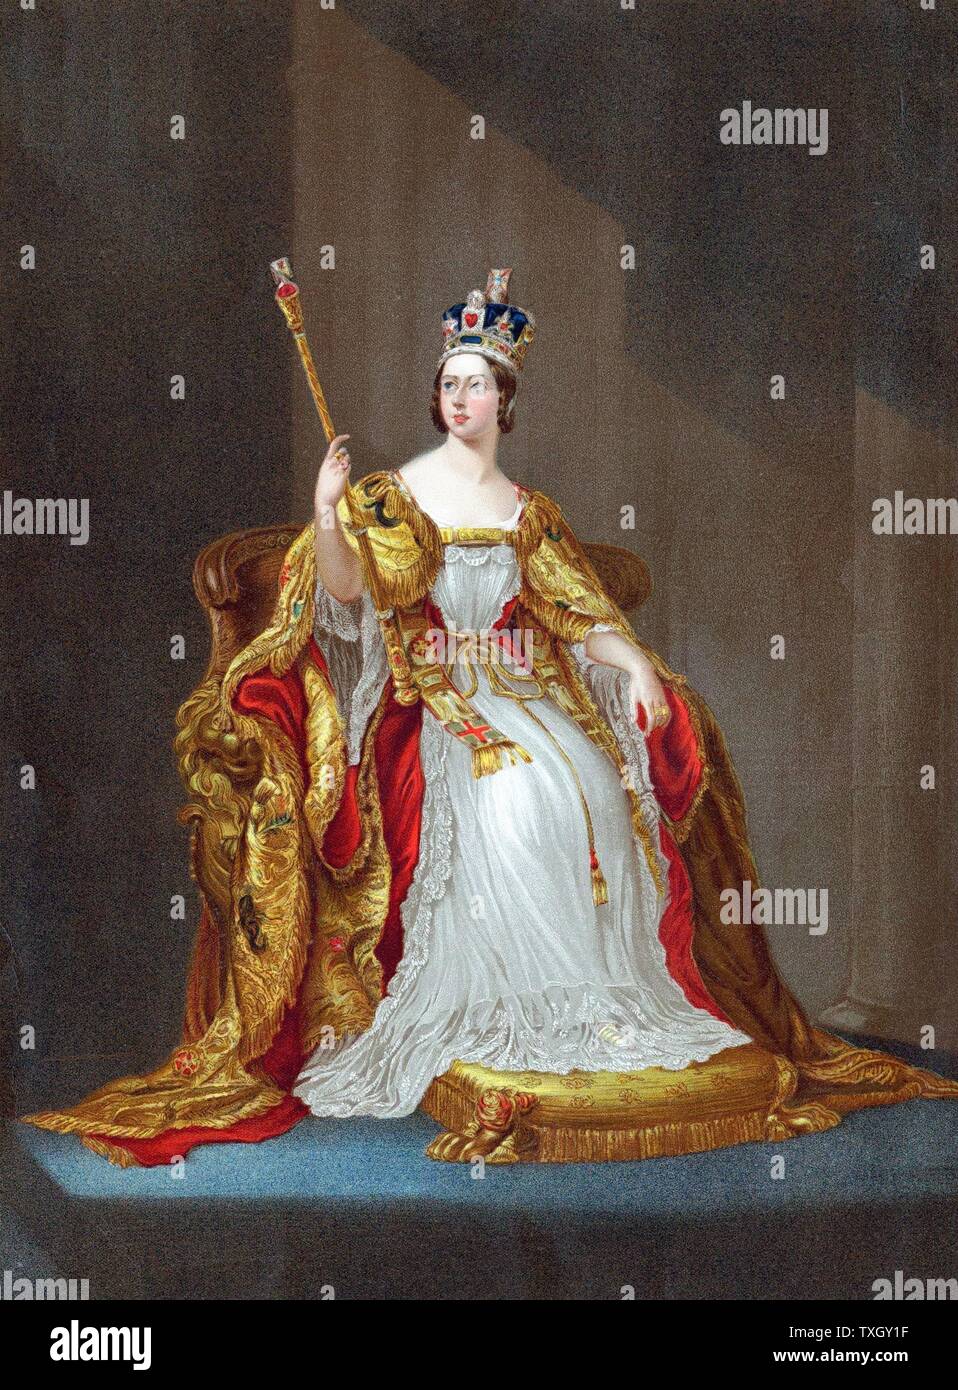 Königin Victoria (1819-1901) Königin von Großbritannien von 1837, Kaiserin von Indien aus 1876, 1838 gekrönt. Victoria auf Thron im Coronation Roben Krone tragen und halten Zepter Oleograph Stockfoto